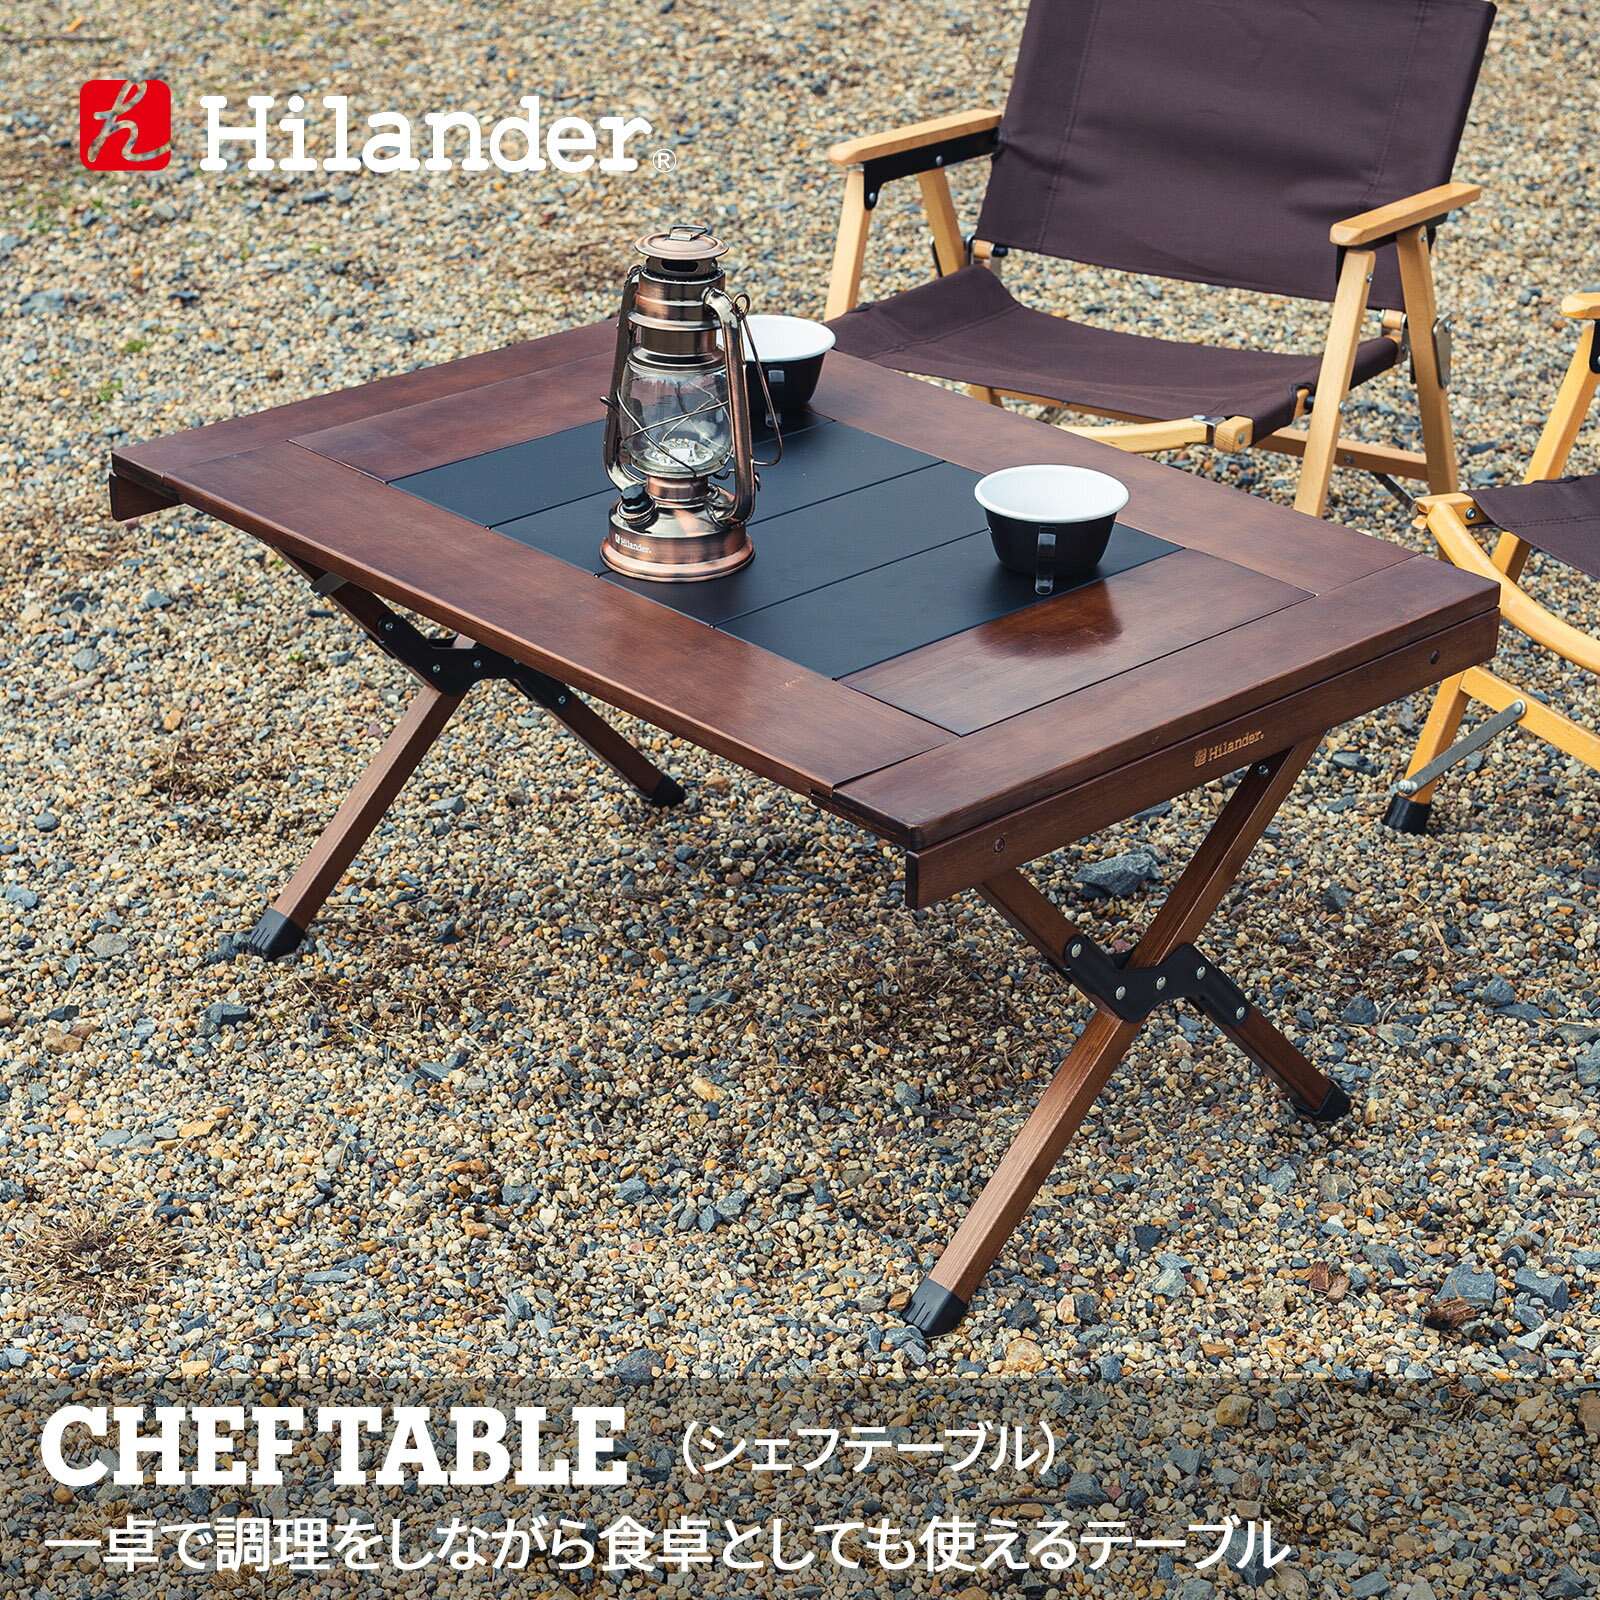 Hilander(ハイランダー) キャンプテーブル CHEF TABLE(シェフテーブル)アウトドアテーブル ダークブラウン HCT-029